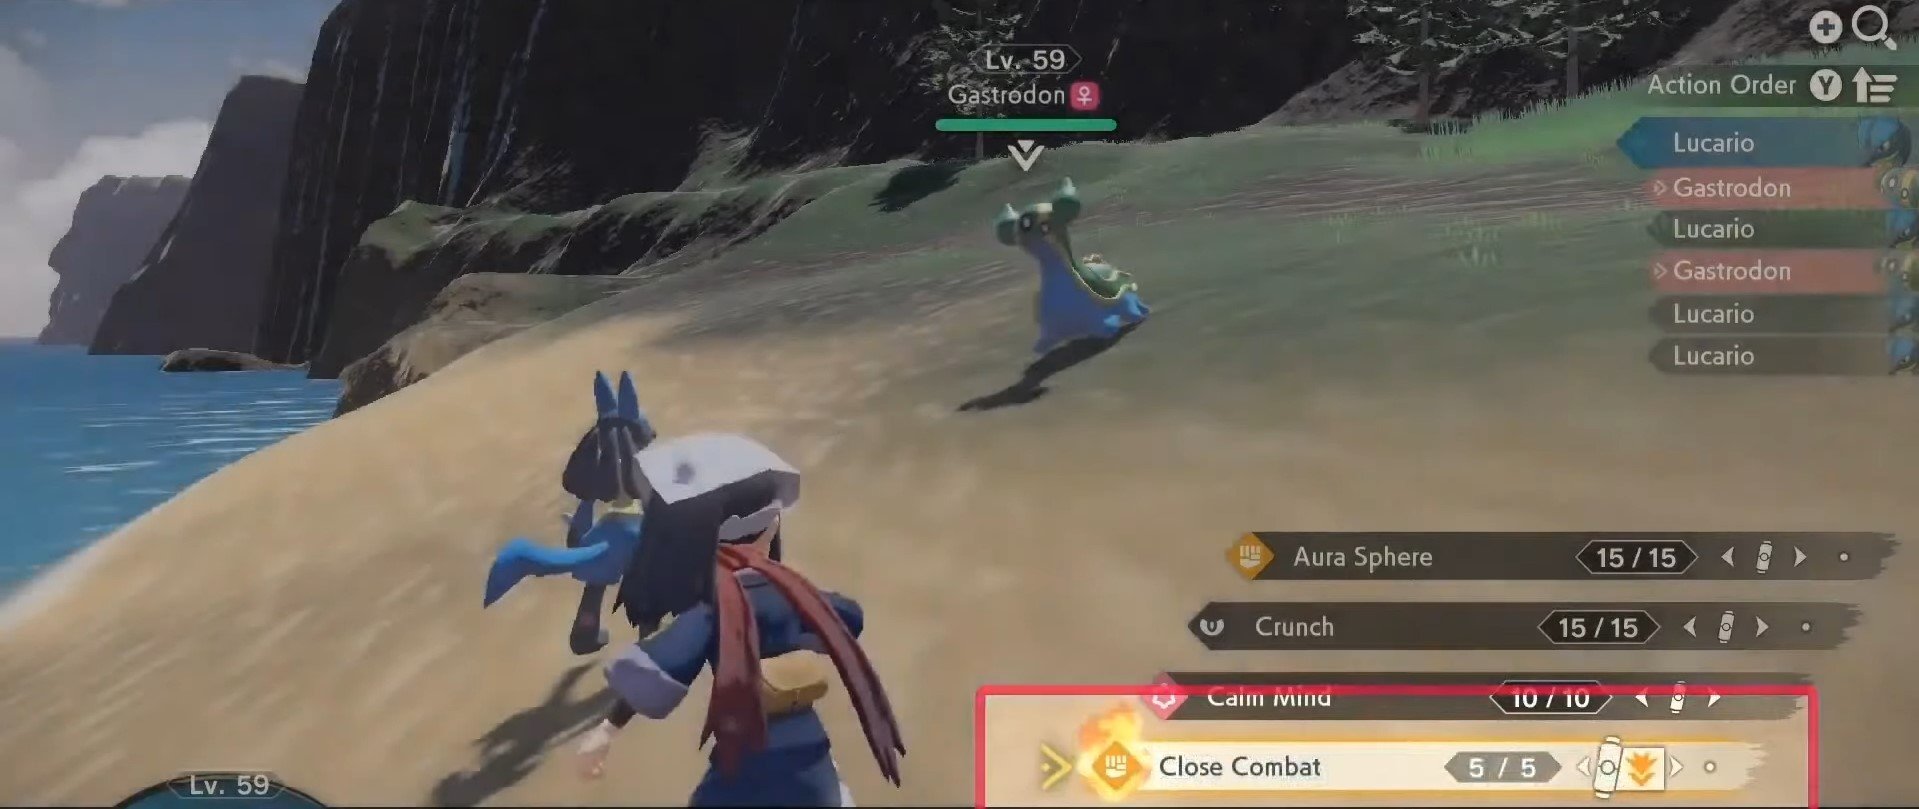 Pokémon Legends: Arceus ganha novo trailer com data de lançamento